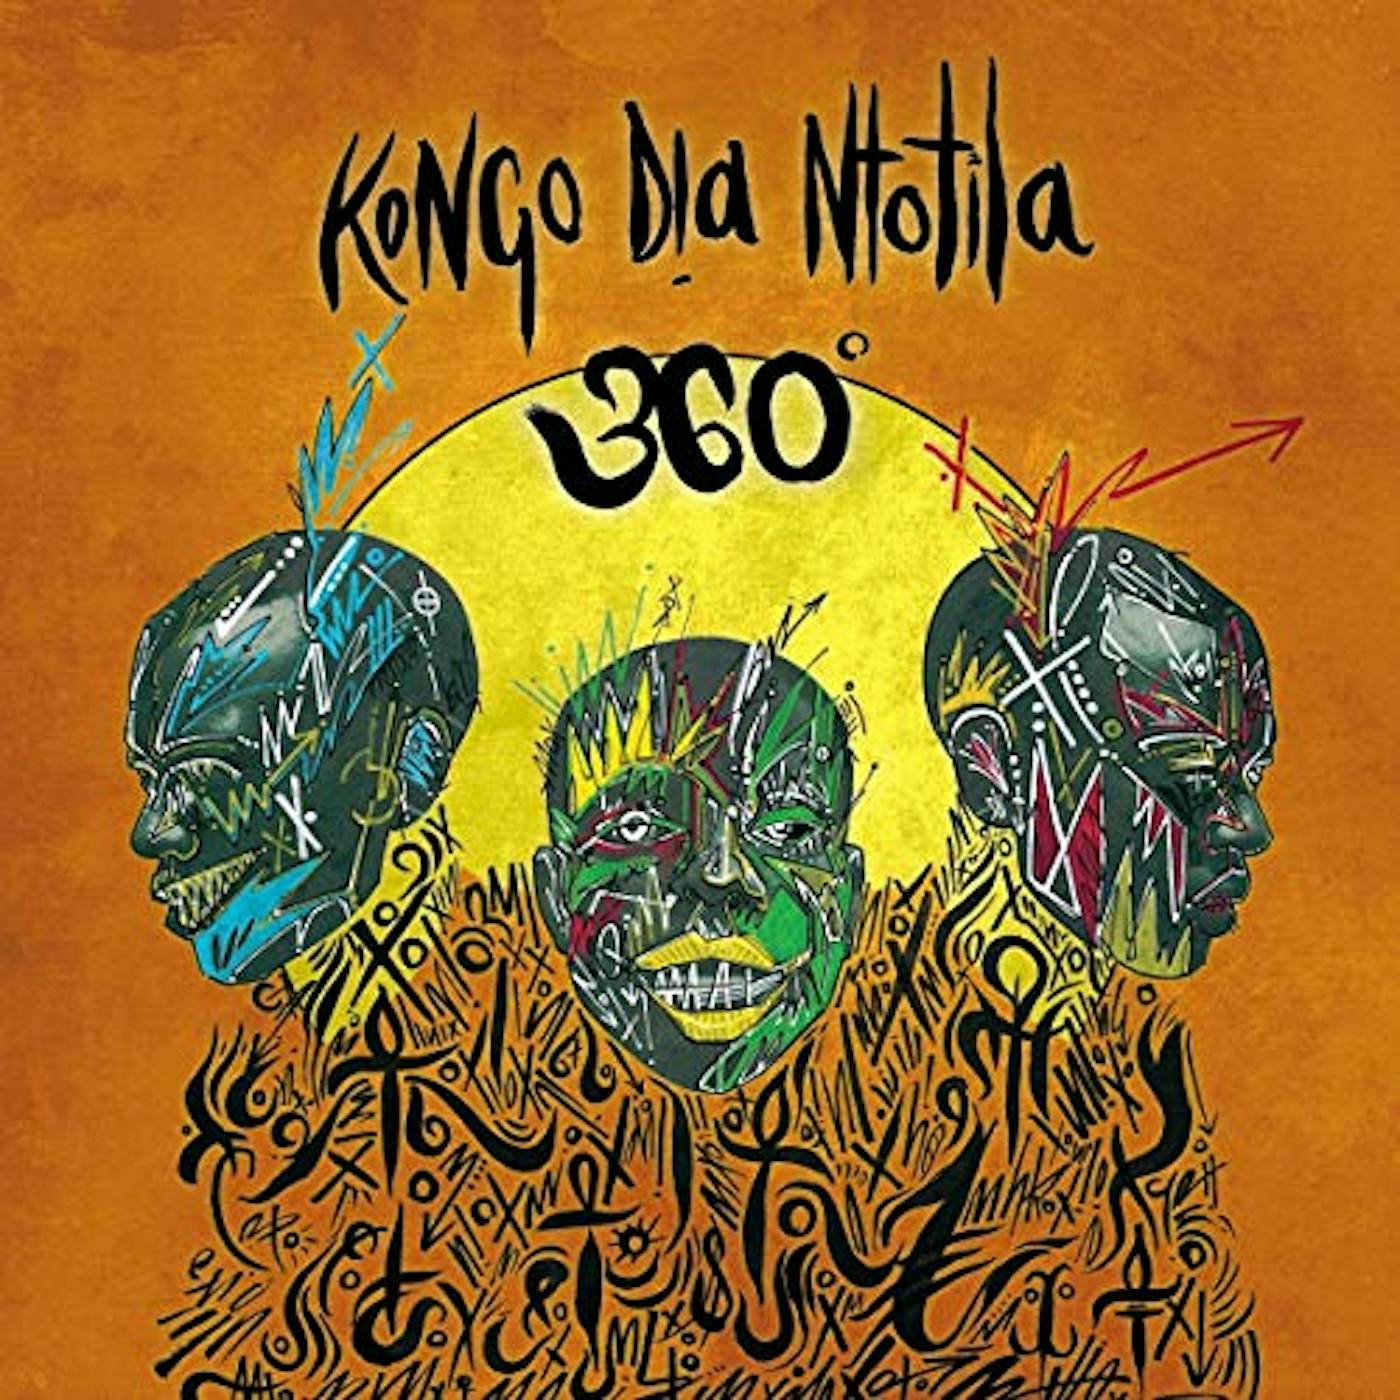 Kongo Dia Ntotila 360 DEGREES Vinyl Record